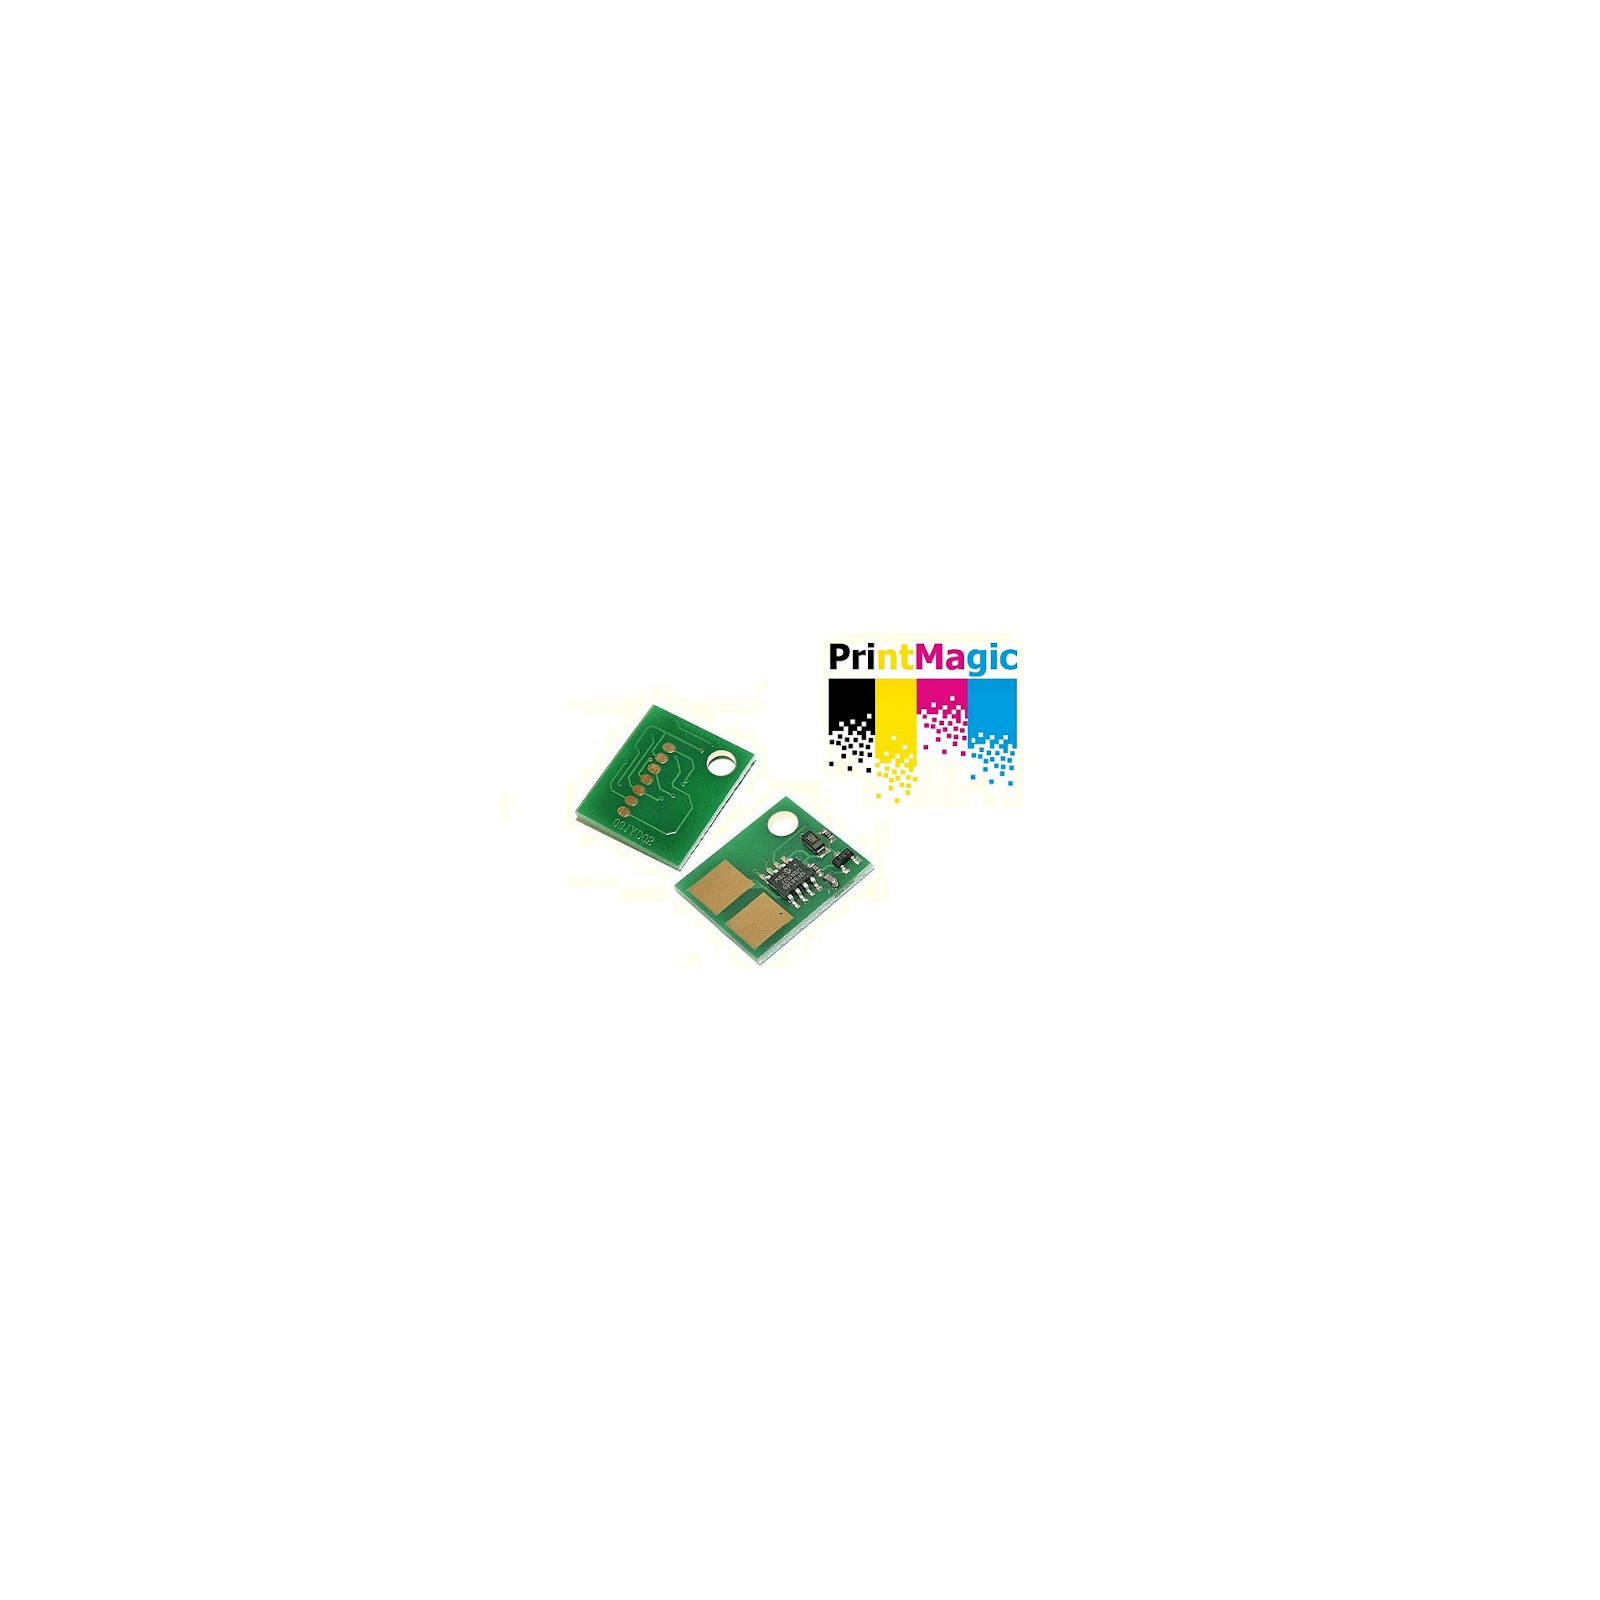 Чип для картриджа Samsung ML-1660/1860/1675/2950/SCX-3200/D104S, 1.5K PrintMagic (CPM-SD104S)